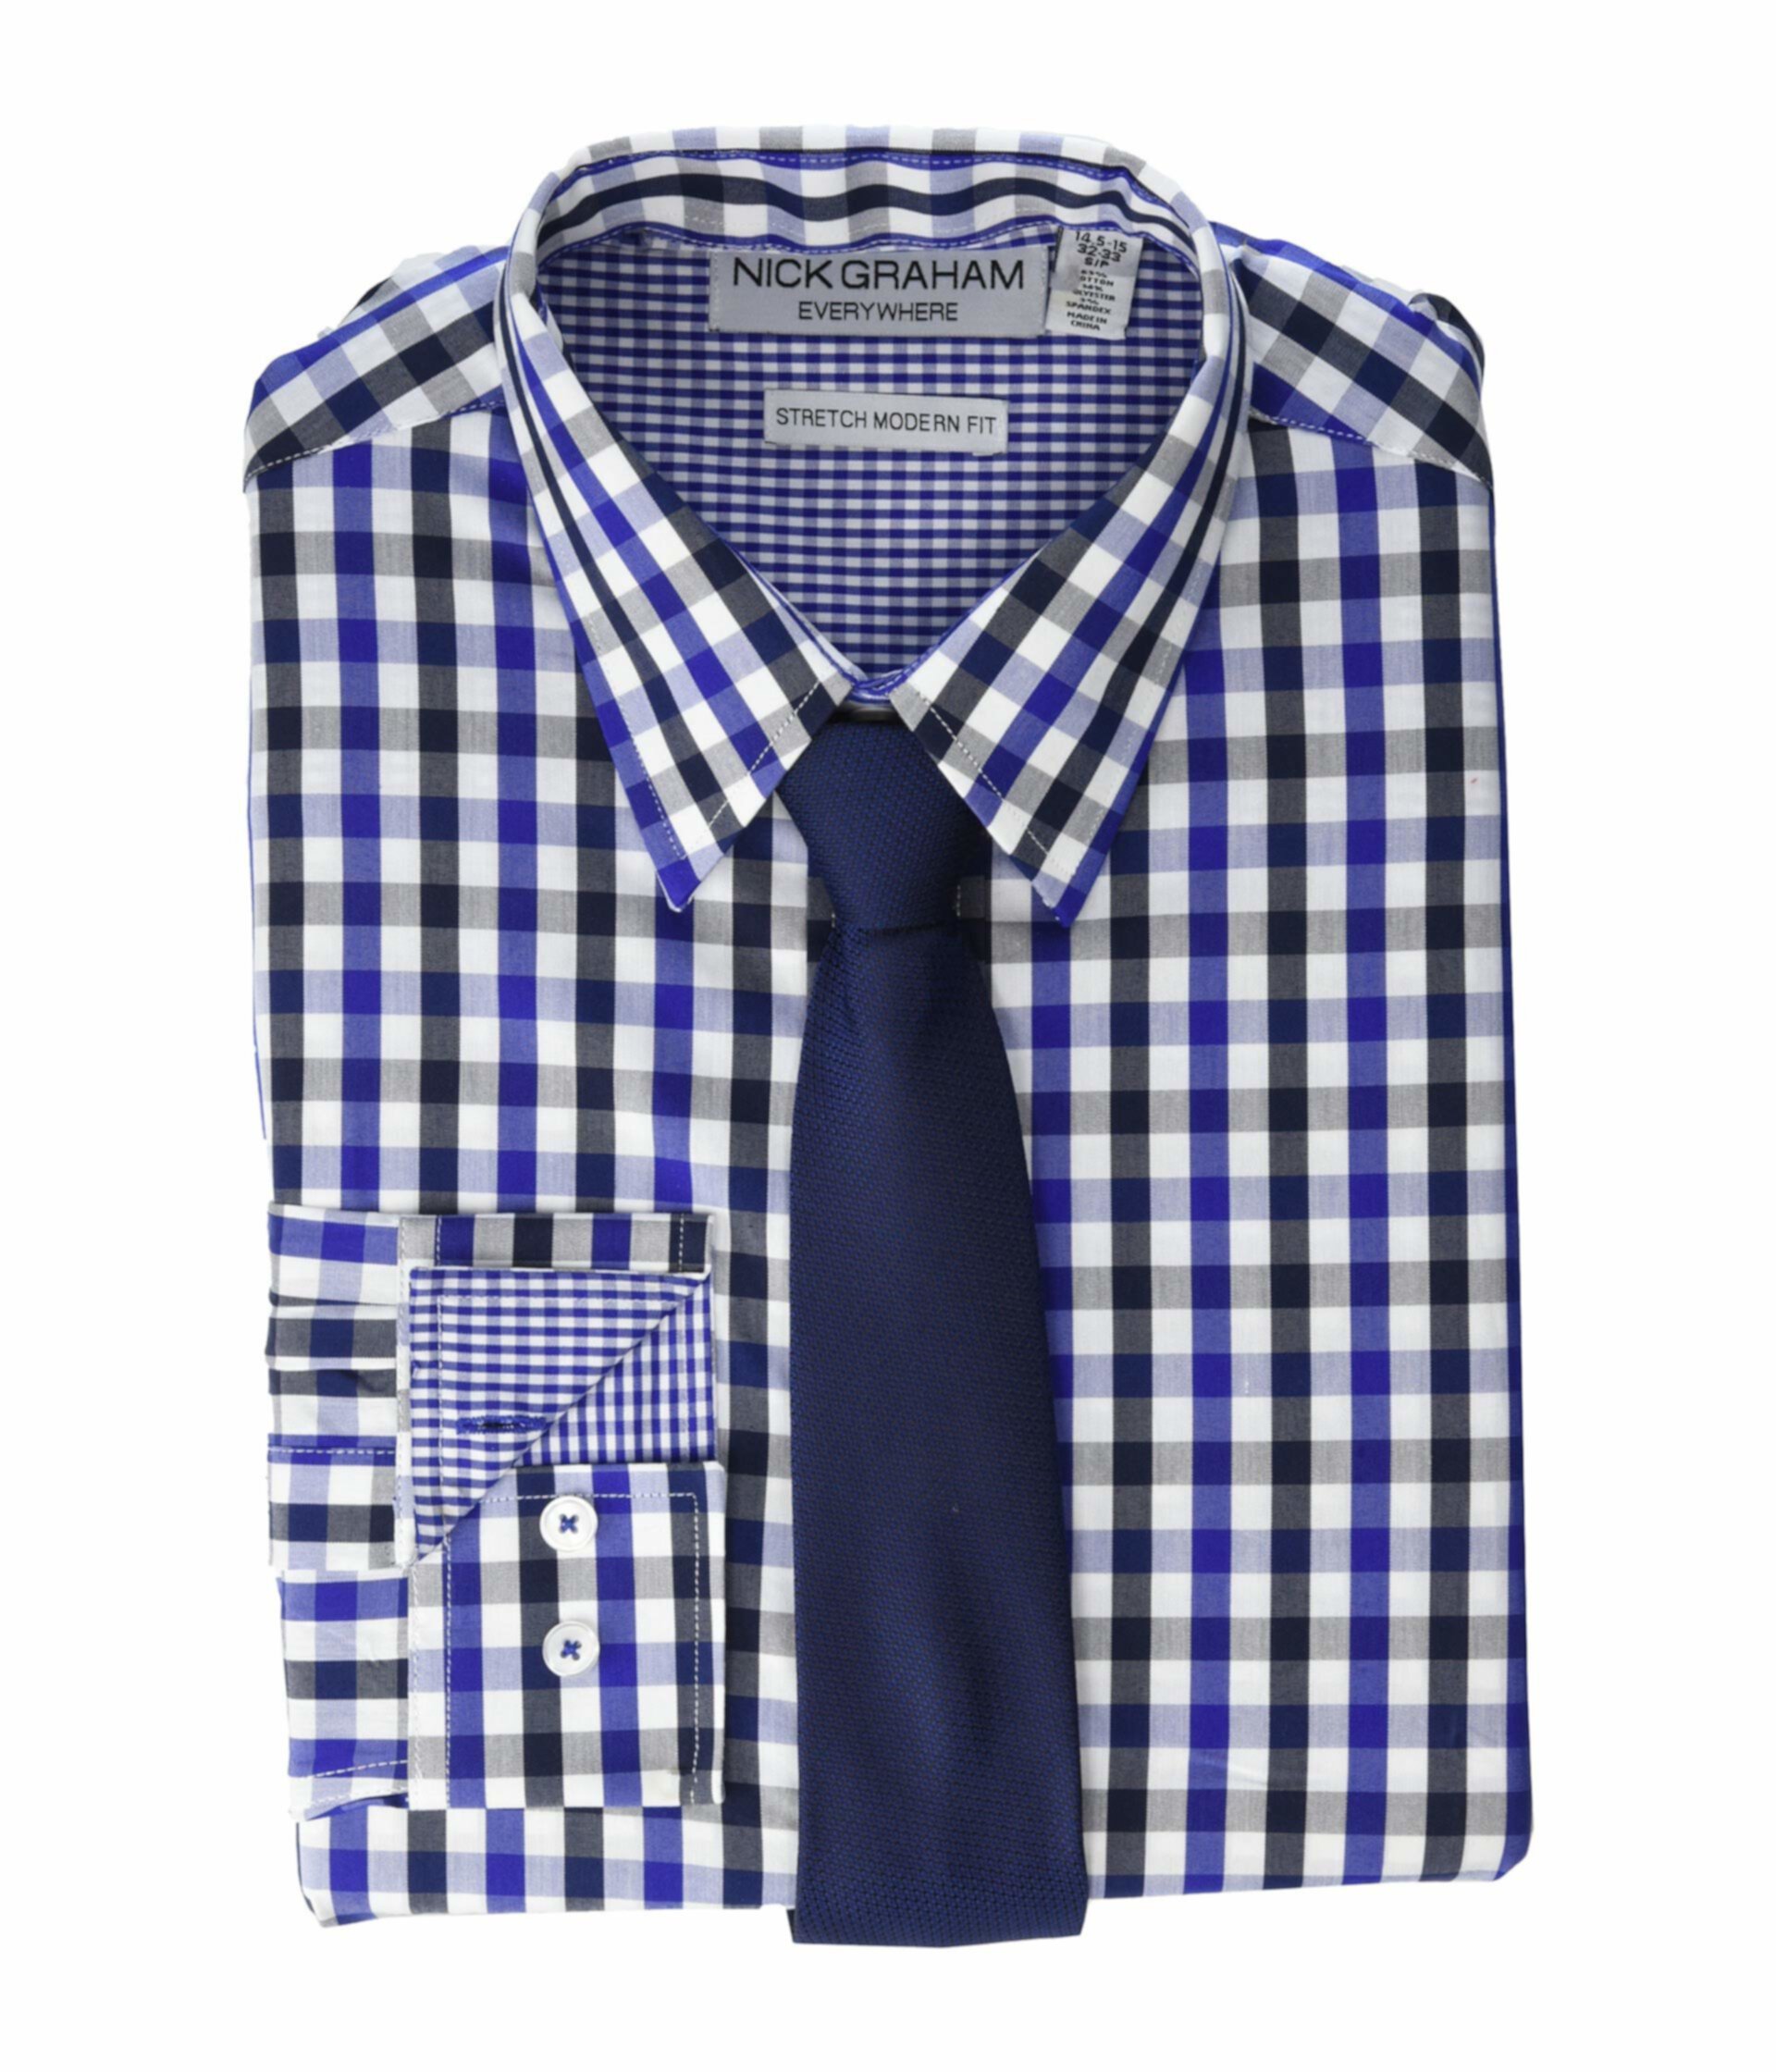 Растягивающаяся классическая рубашка и галстук Gingham Contrast CVC Nick Graham